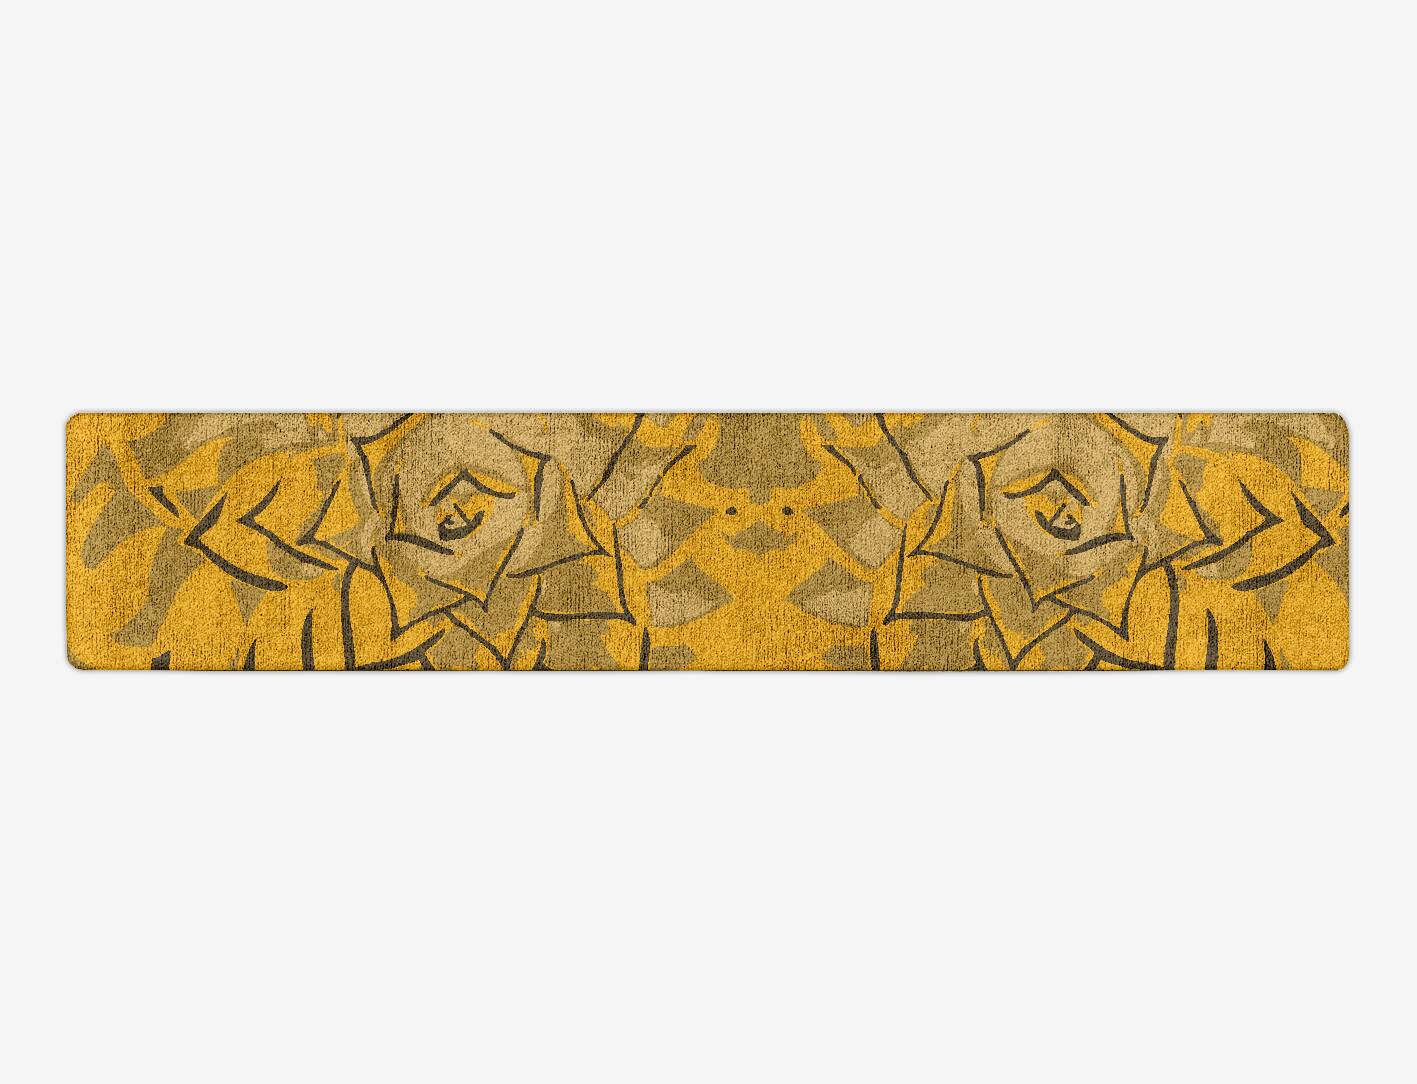 Rosette Abstract Runner Hand Tufted Bamboo Silk Custom Rug by Rug Artisan